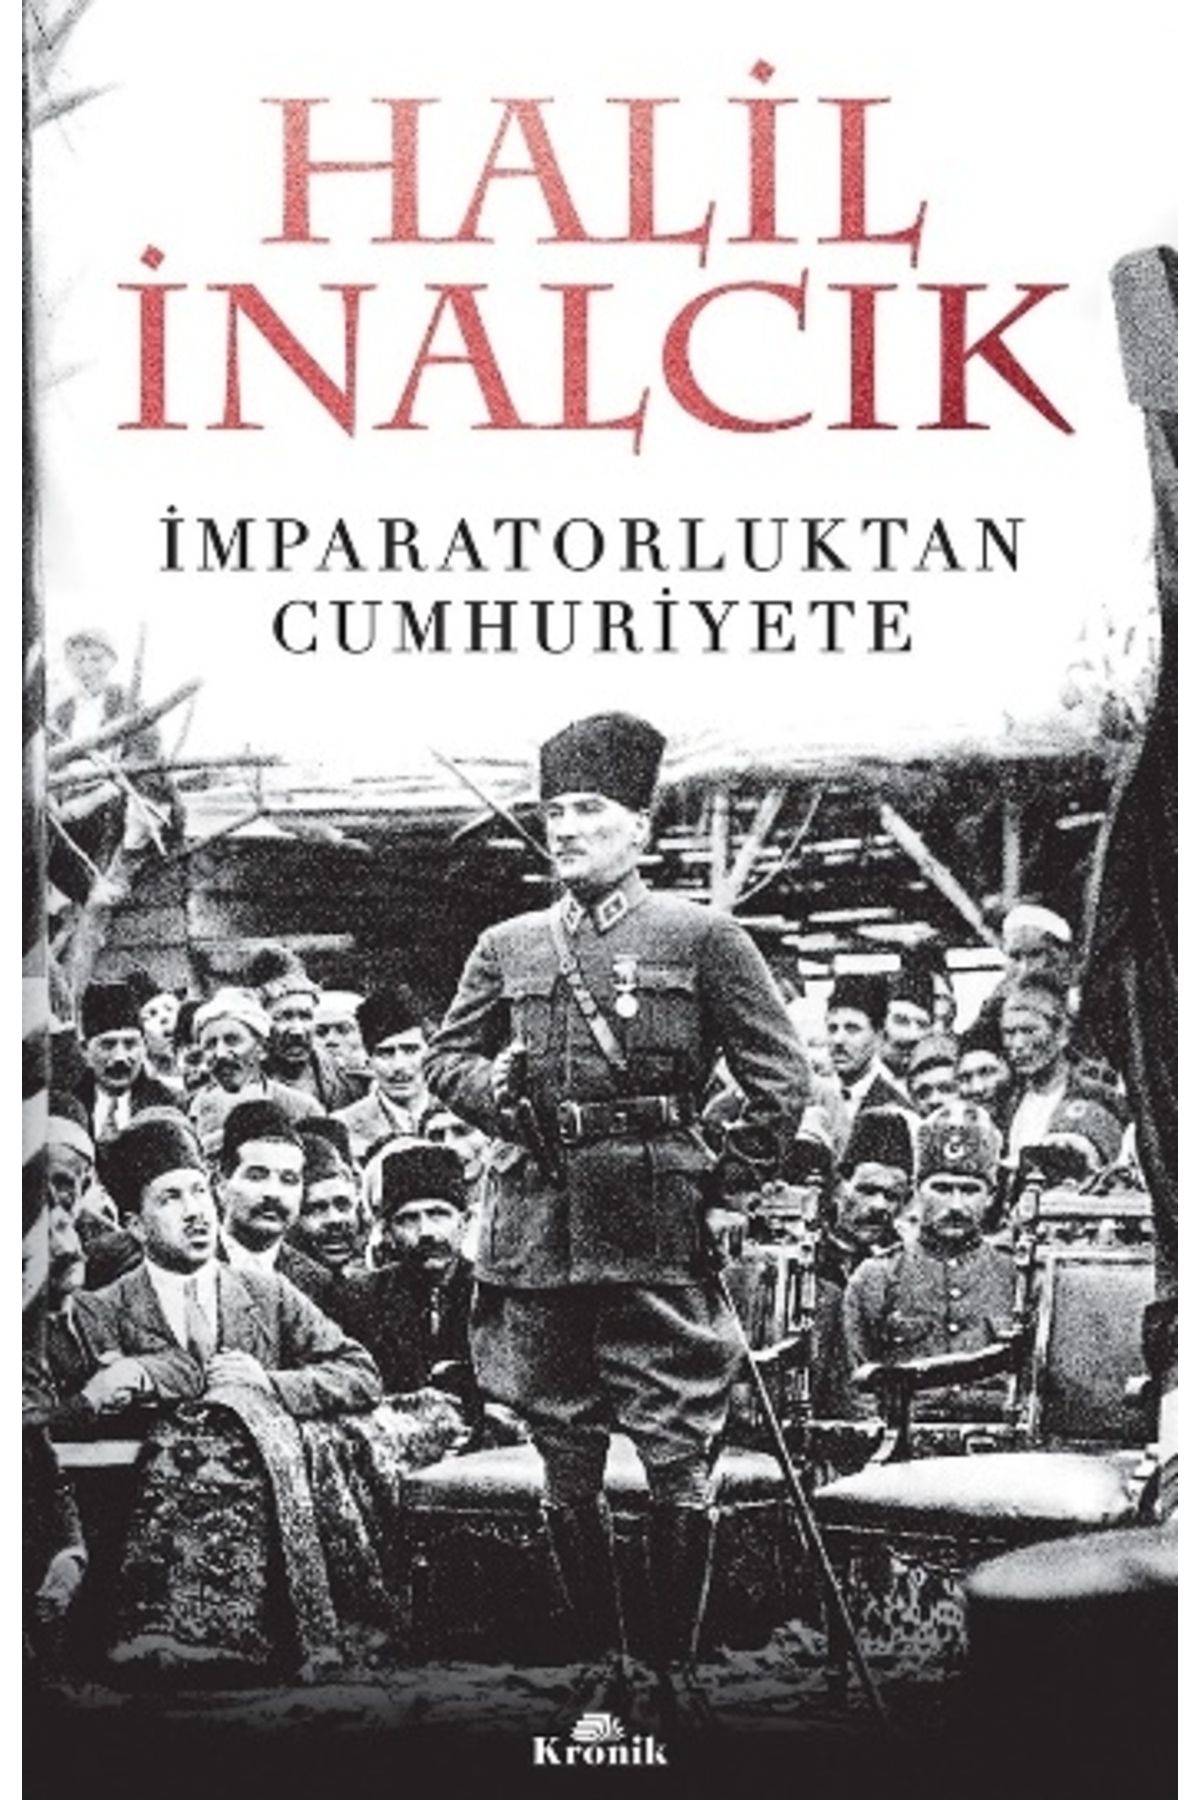 Kronik Kitap Imparatorluktan Cumhuriyete